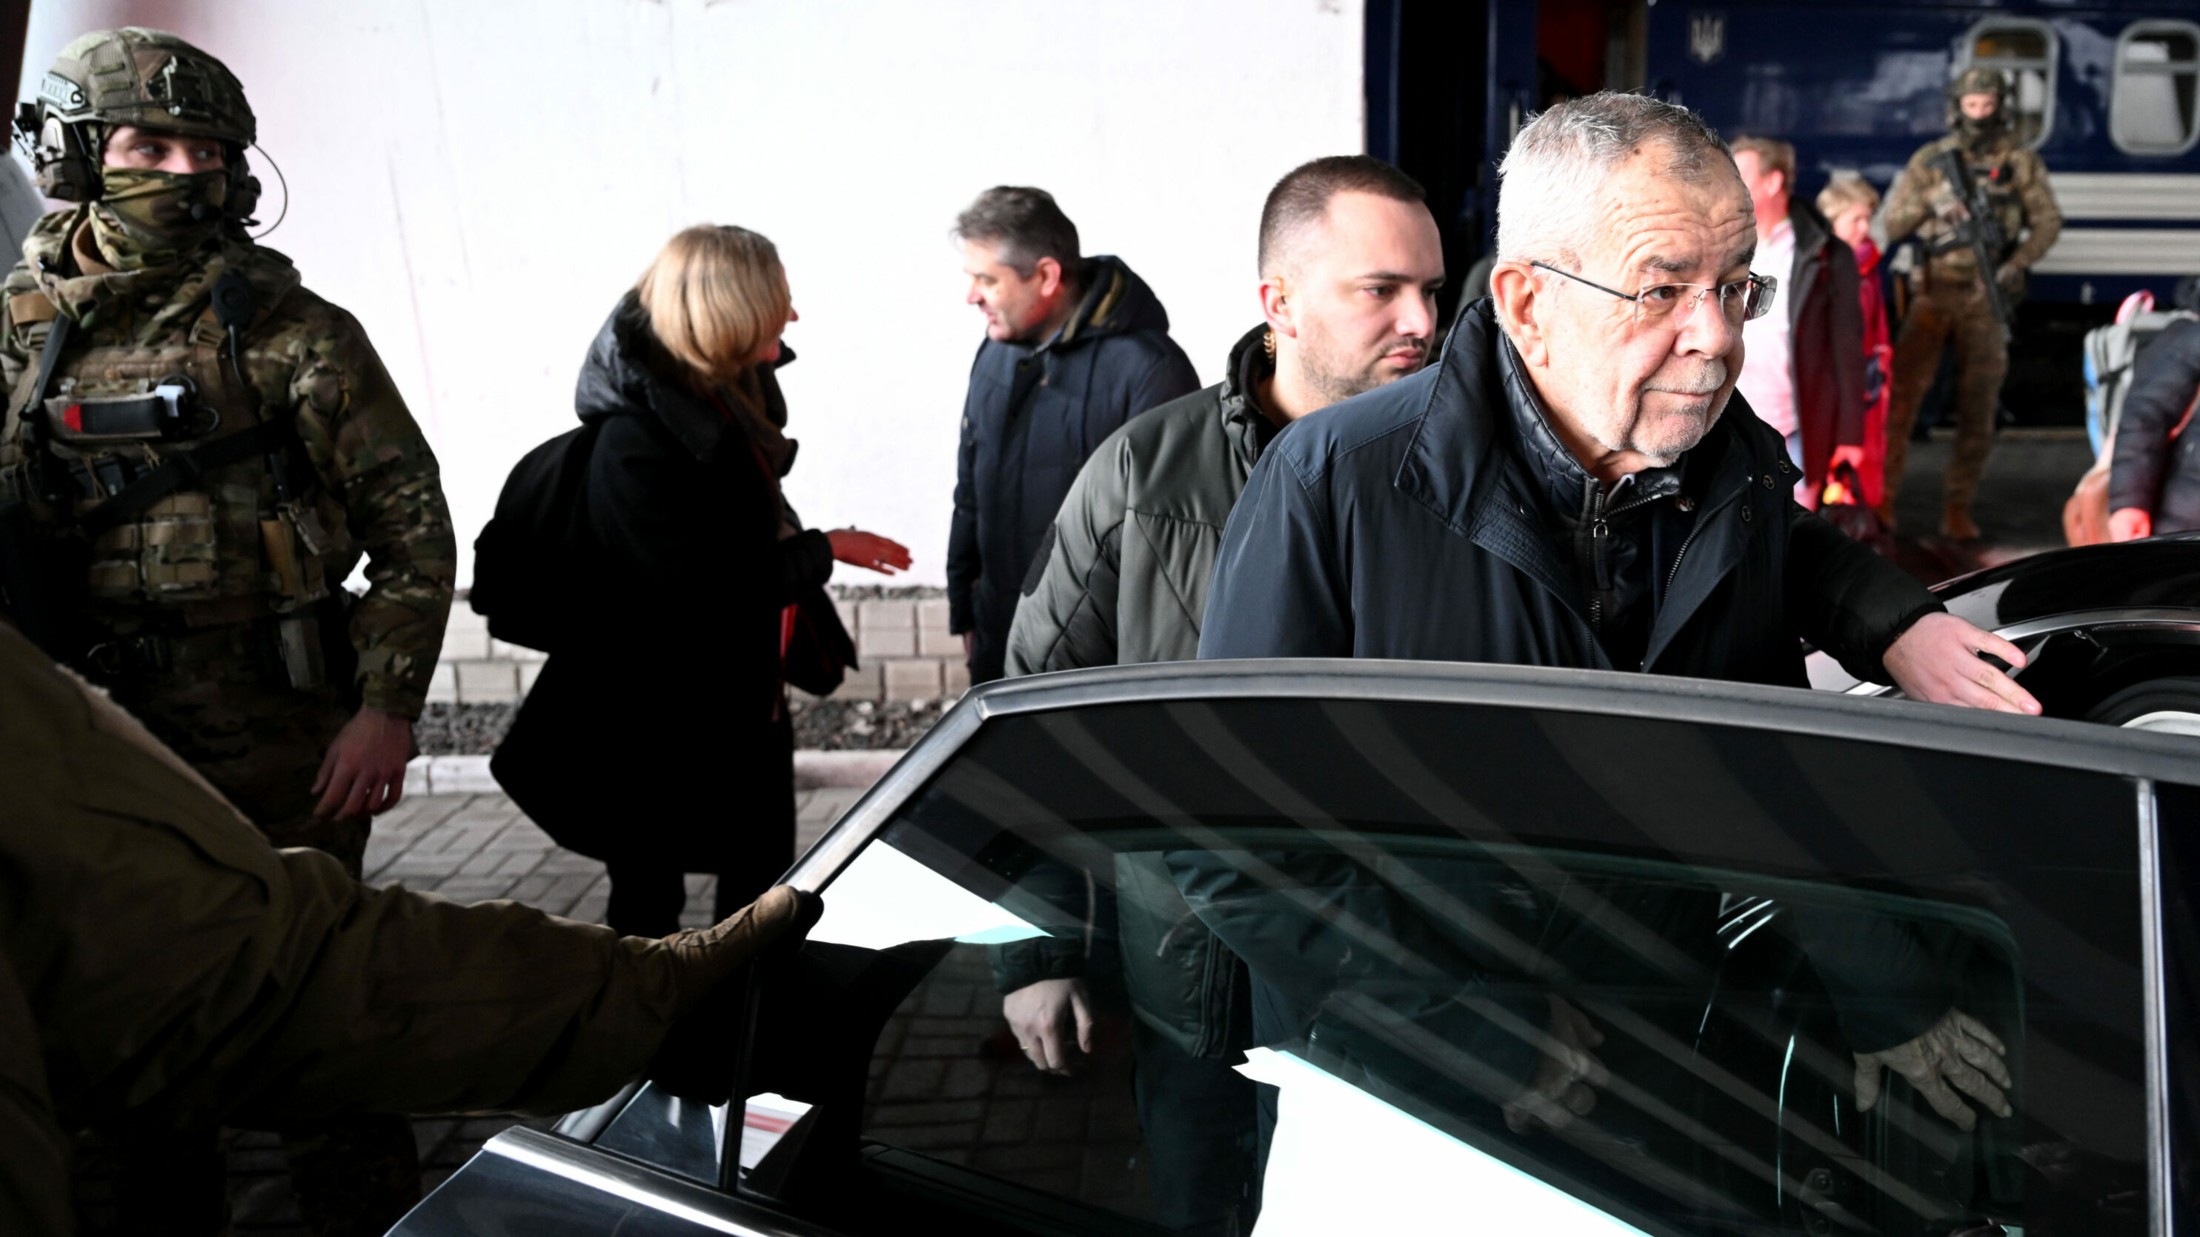 الرئيس النمساوي ألكسندر فان در بللن في زيارة له للعاصمة كييف